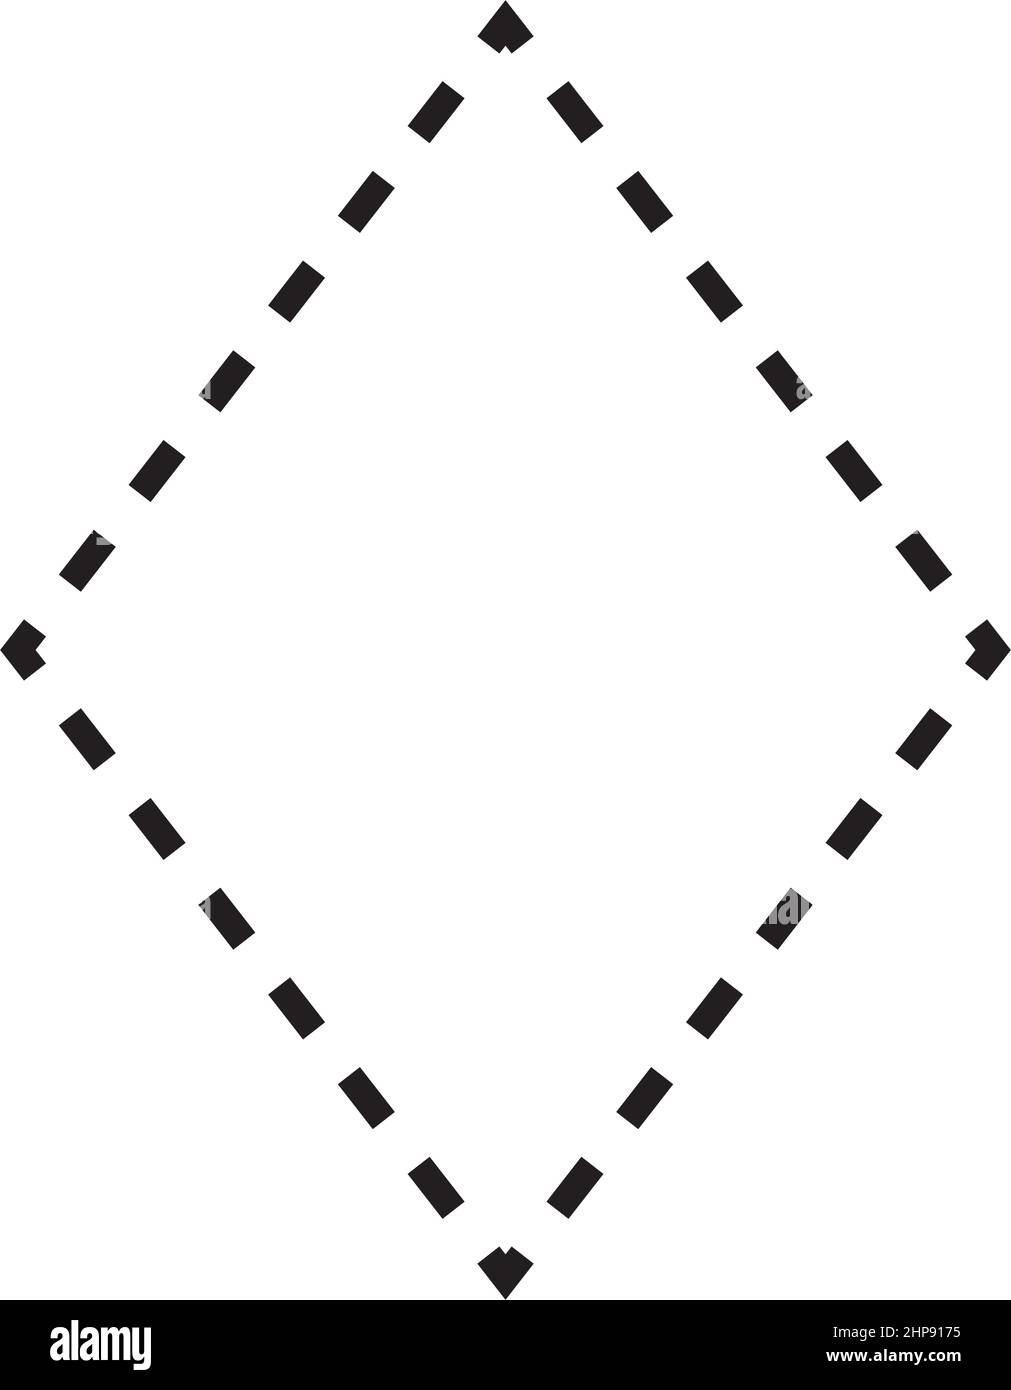 Rhombus-Form gestricheltes Symbol Vektor-Symbol für kreatives Grafikdesign ui-Element in einer Piktogrammdarstellung Stock Vektor